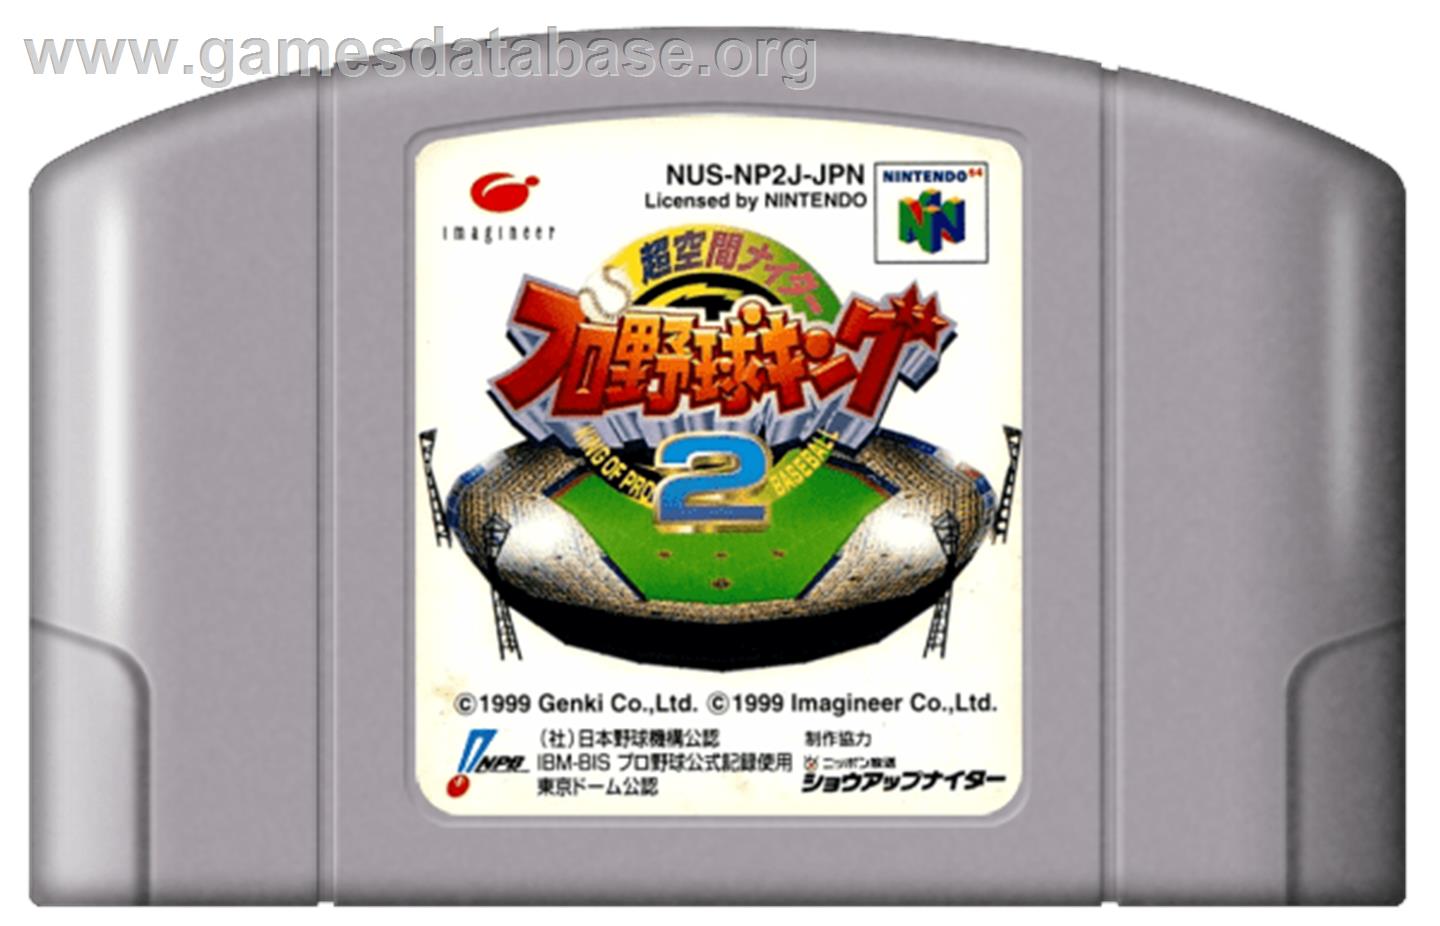 Chou Kuukan Night Pro Yakyuu King 2: King of Pro Baseball - Nintendo N64 - Artwork - Cartridge